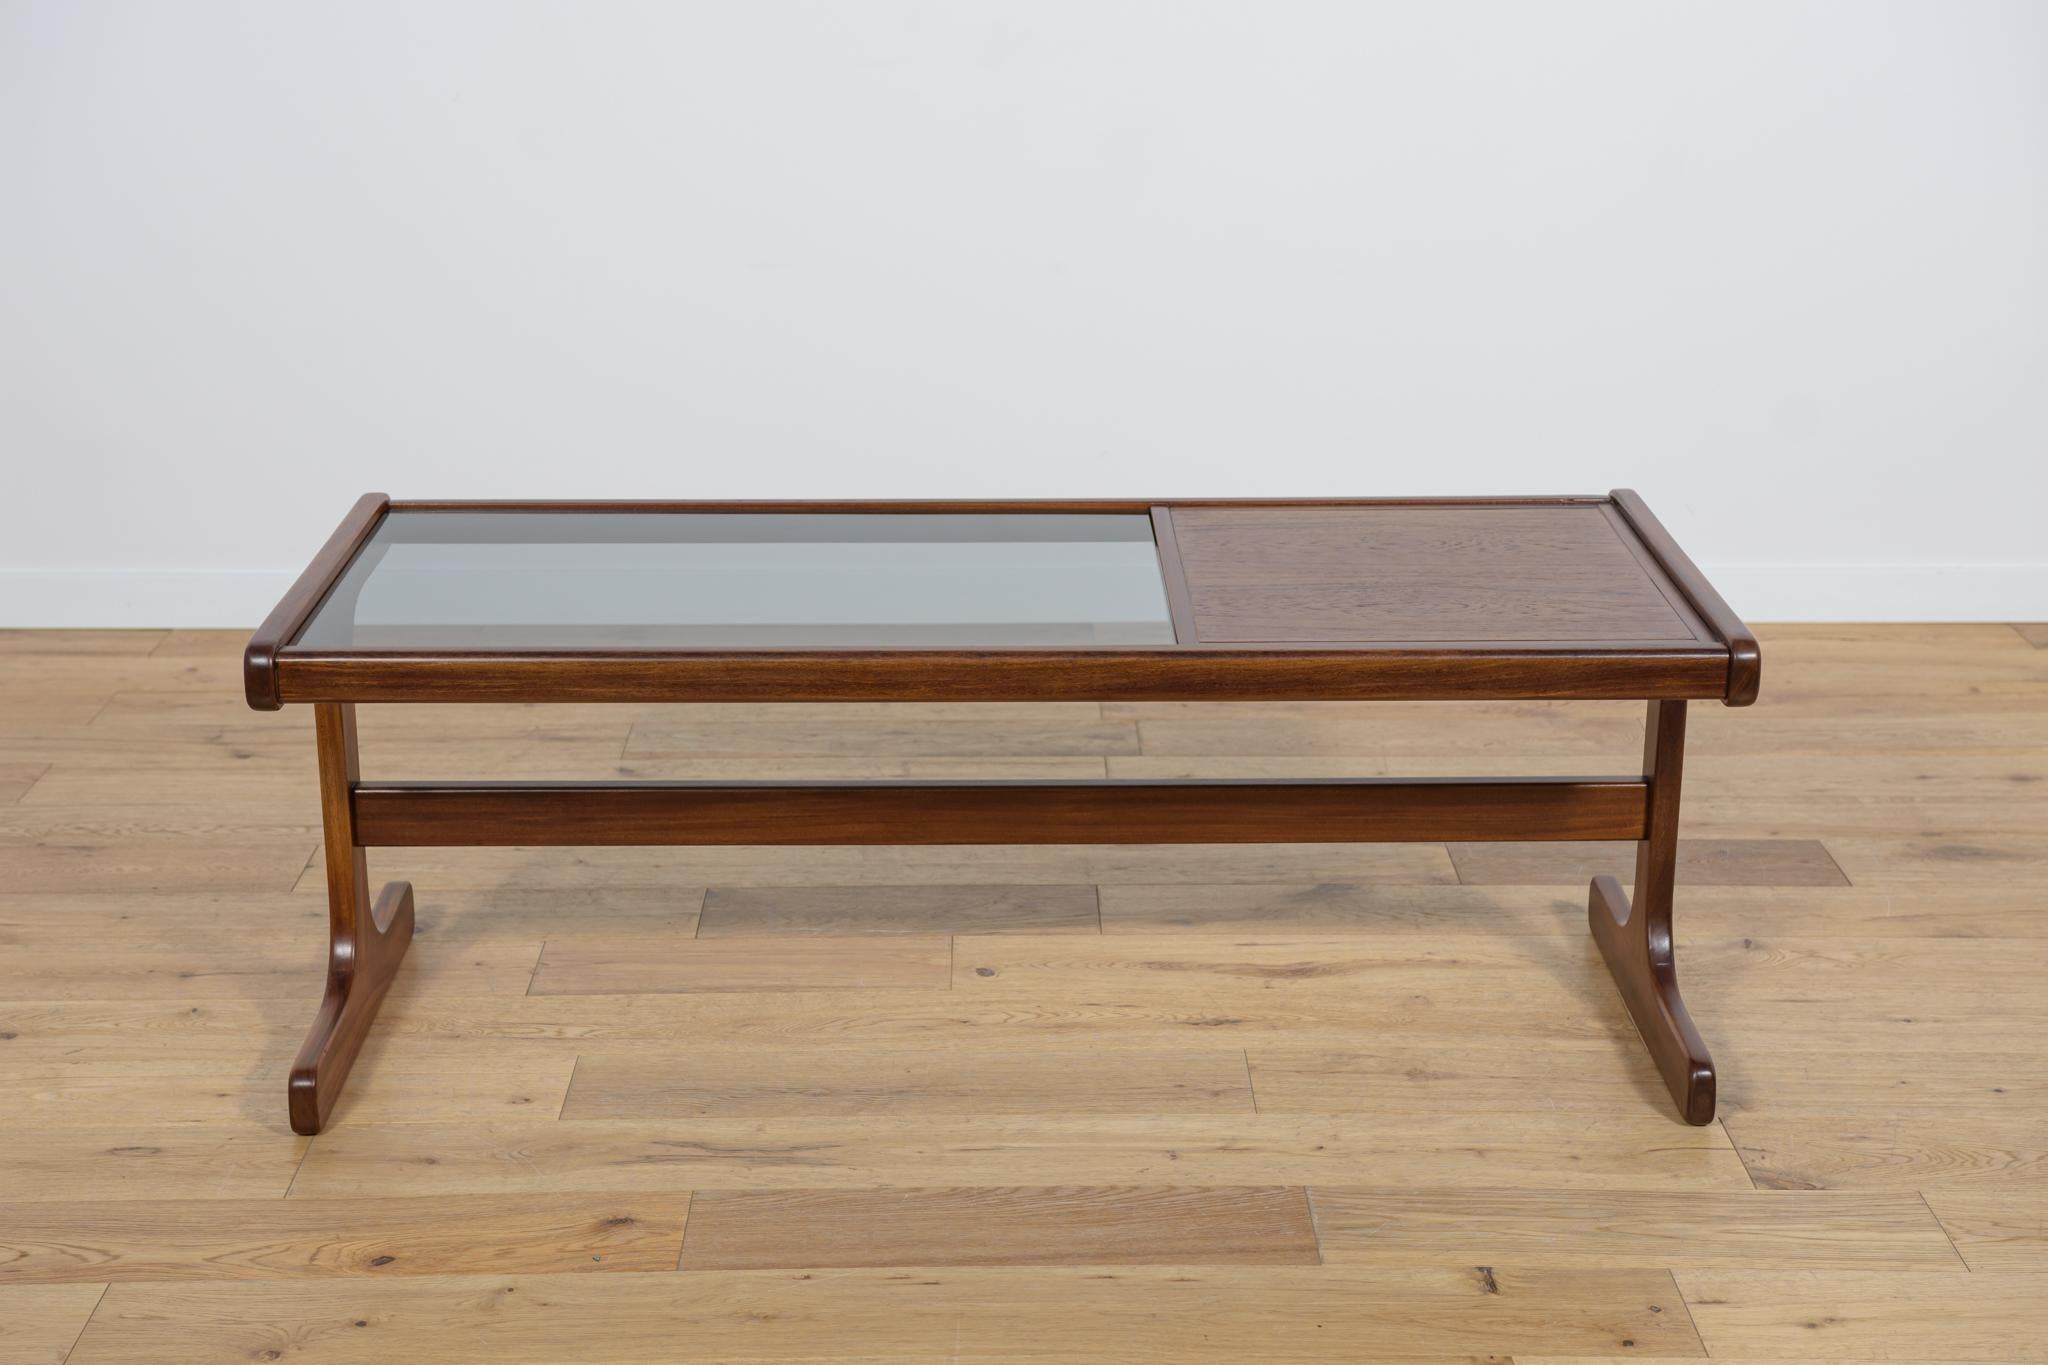 Table basse produite en Grande-Bretagne par G-Plan dans les années 1960. L'ensemble de la pièce a fait l'objet d'une rénovation complète de la menuiserie, le bois de teck a été nettoyé et recouvert d'une huile danoise de haute qualité. Le verre